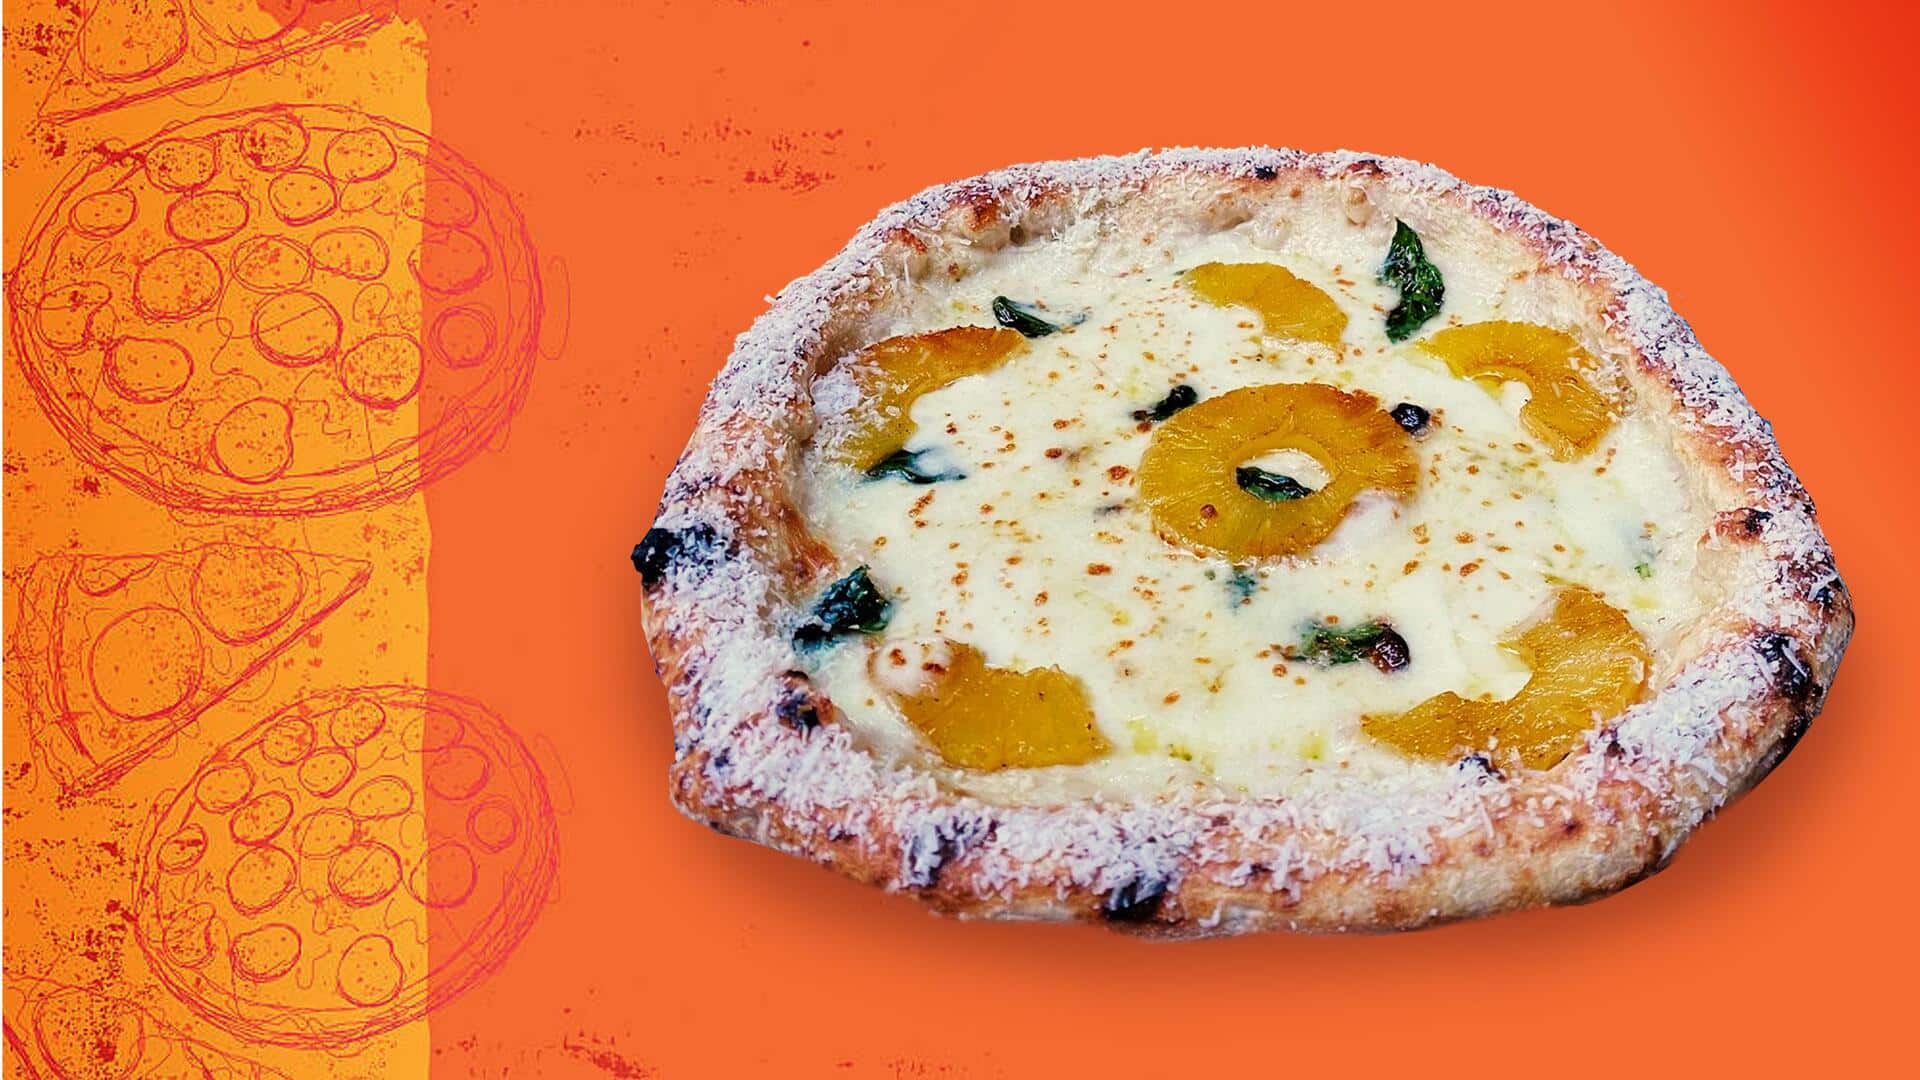 इटली: मशहूर शेफ ने लॉन्च किया अनानास पिज्जा, खड़ा हुआ बड़ा विवाद